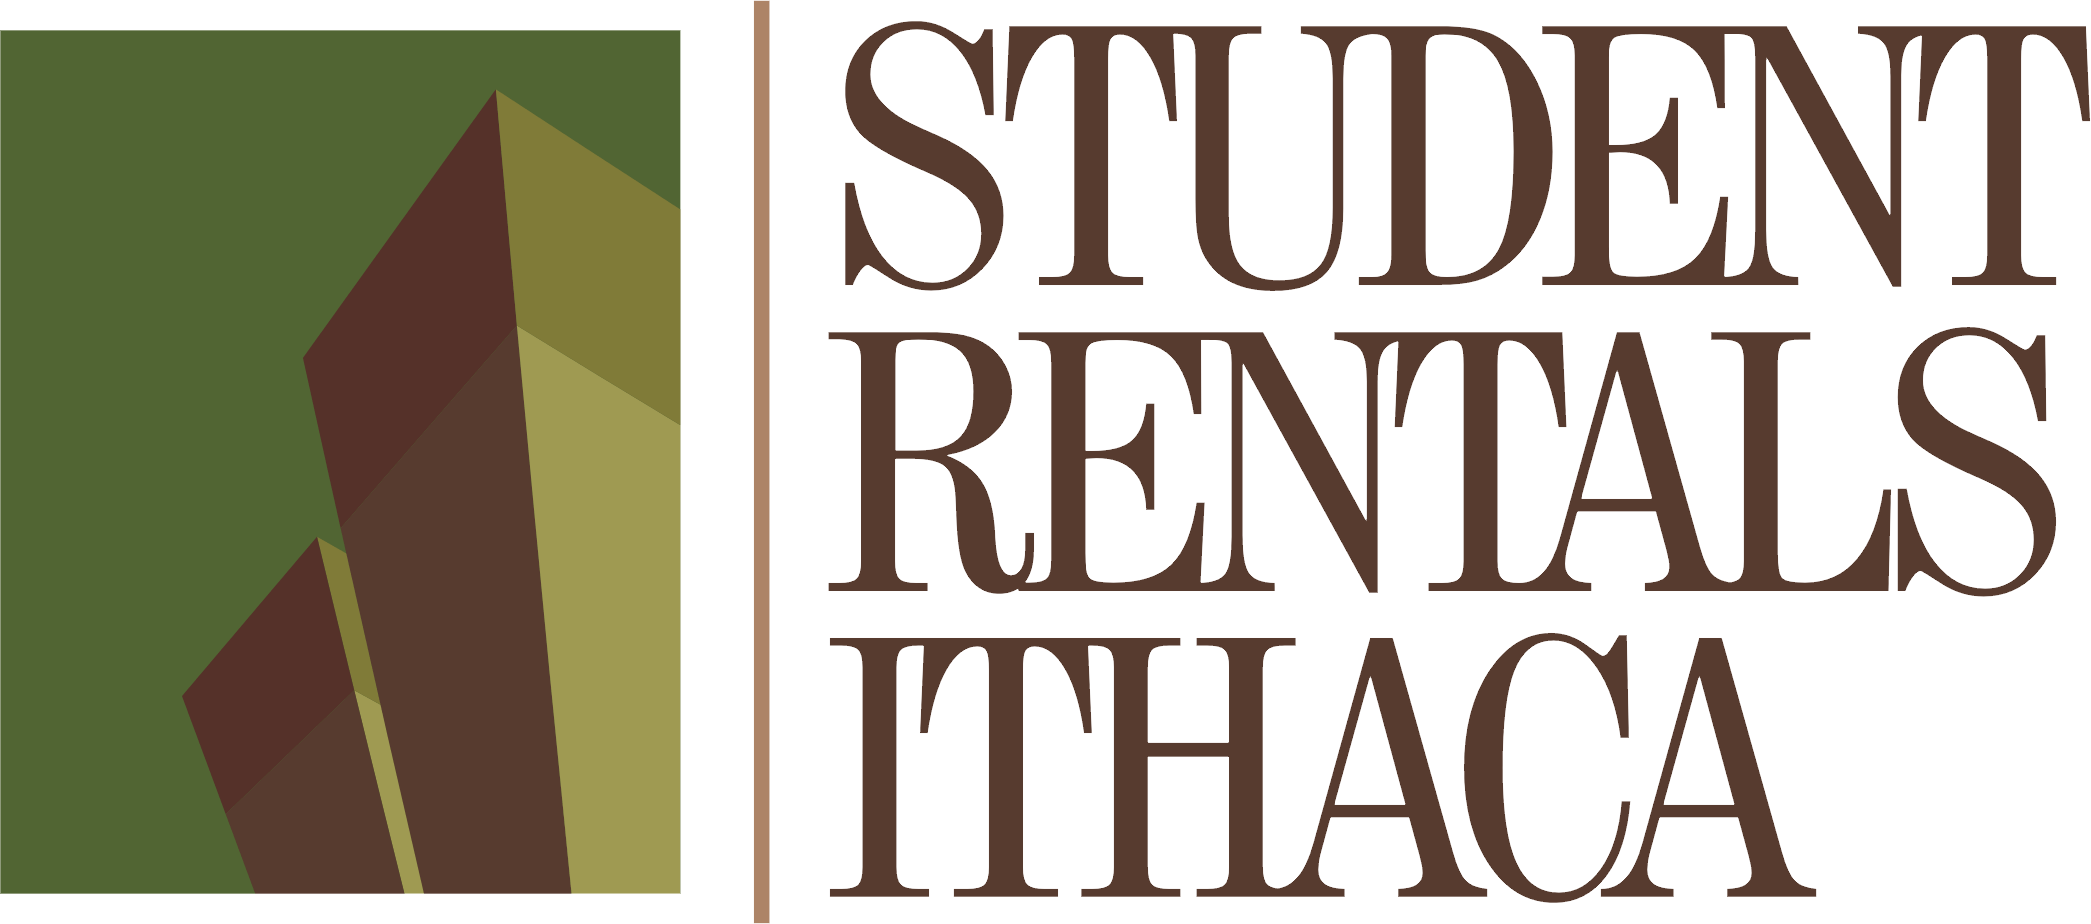 Student Rentals Ithaca